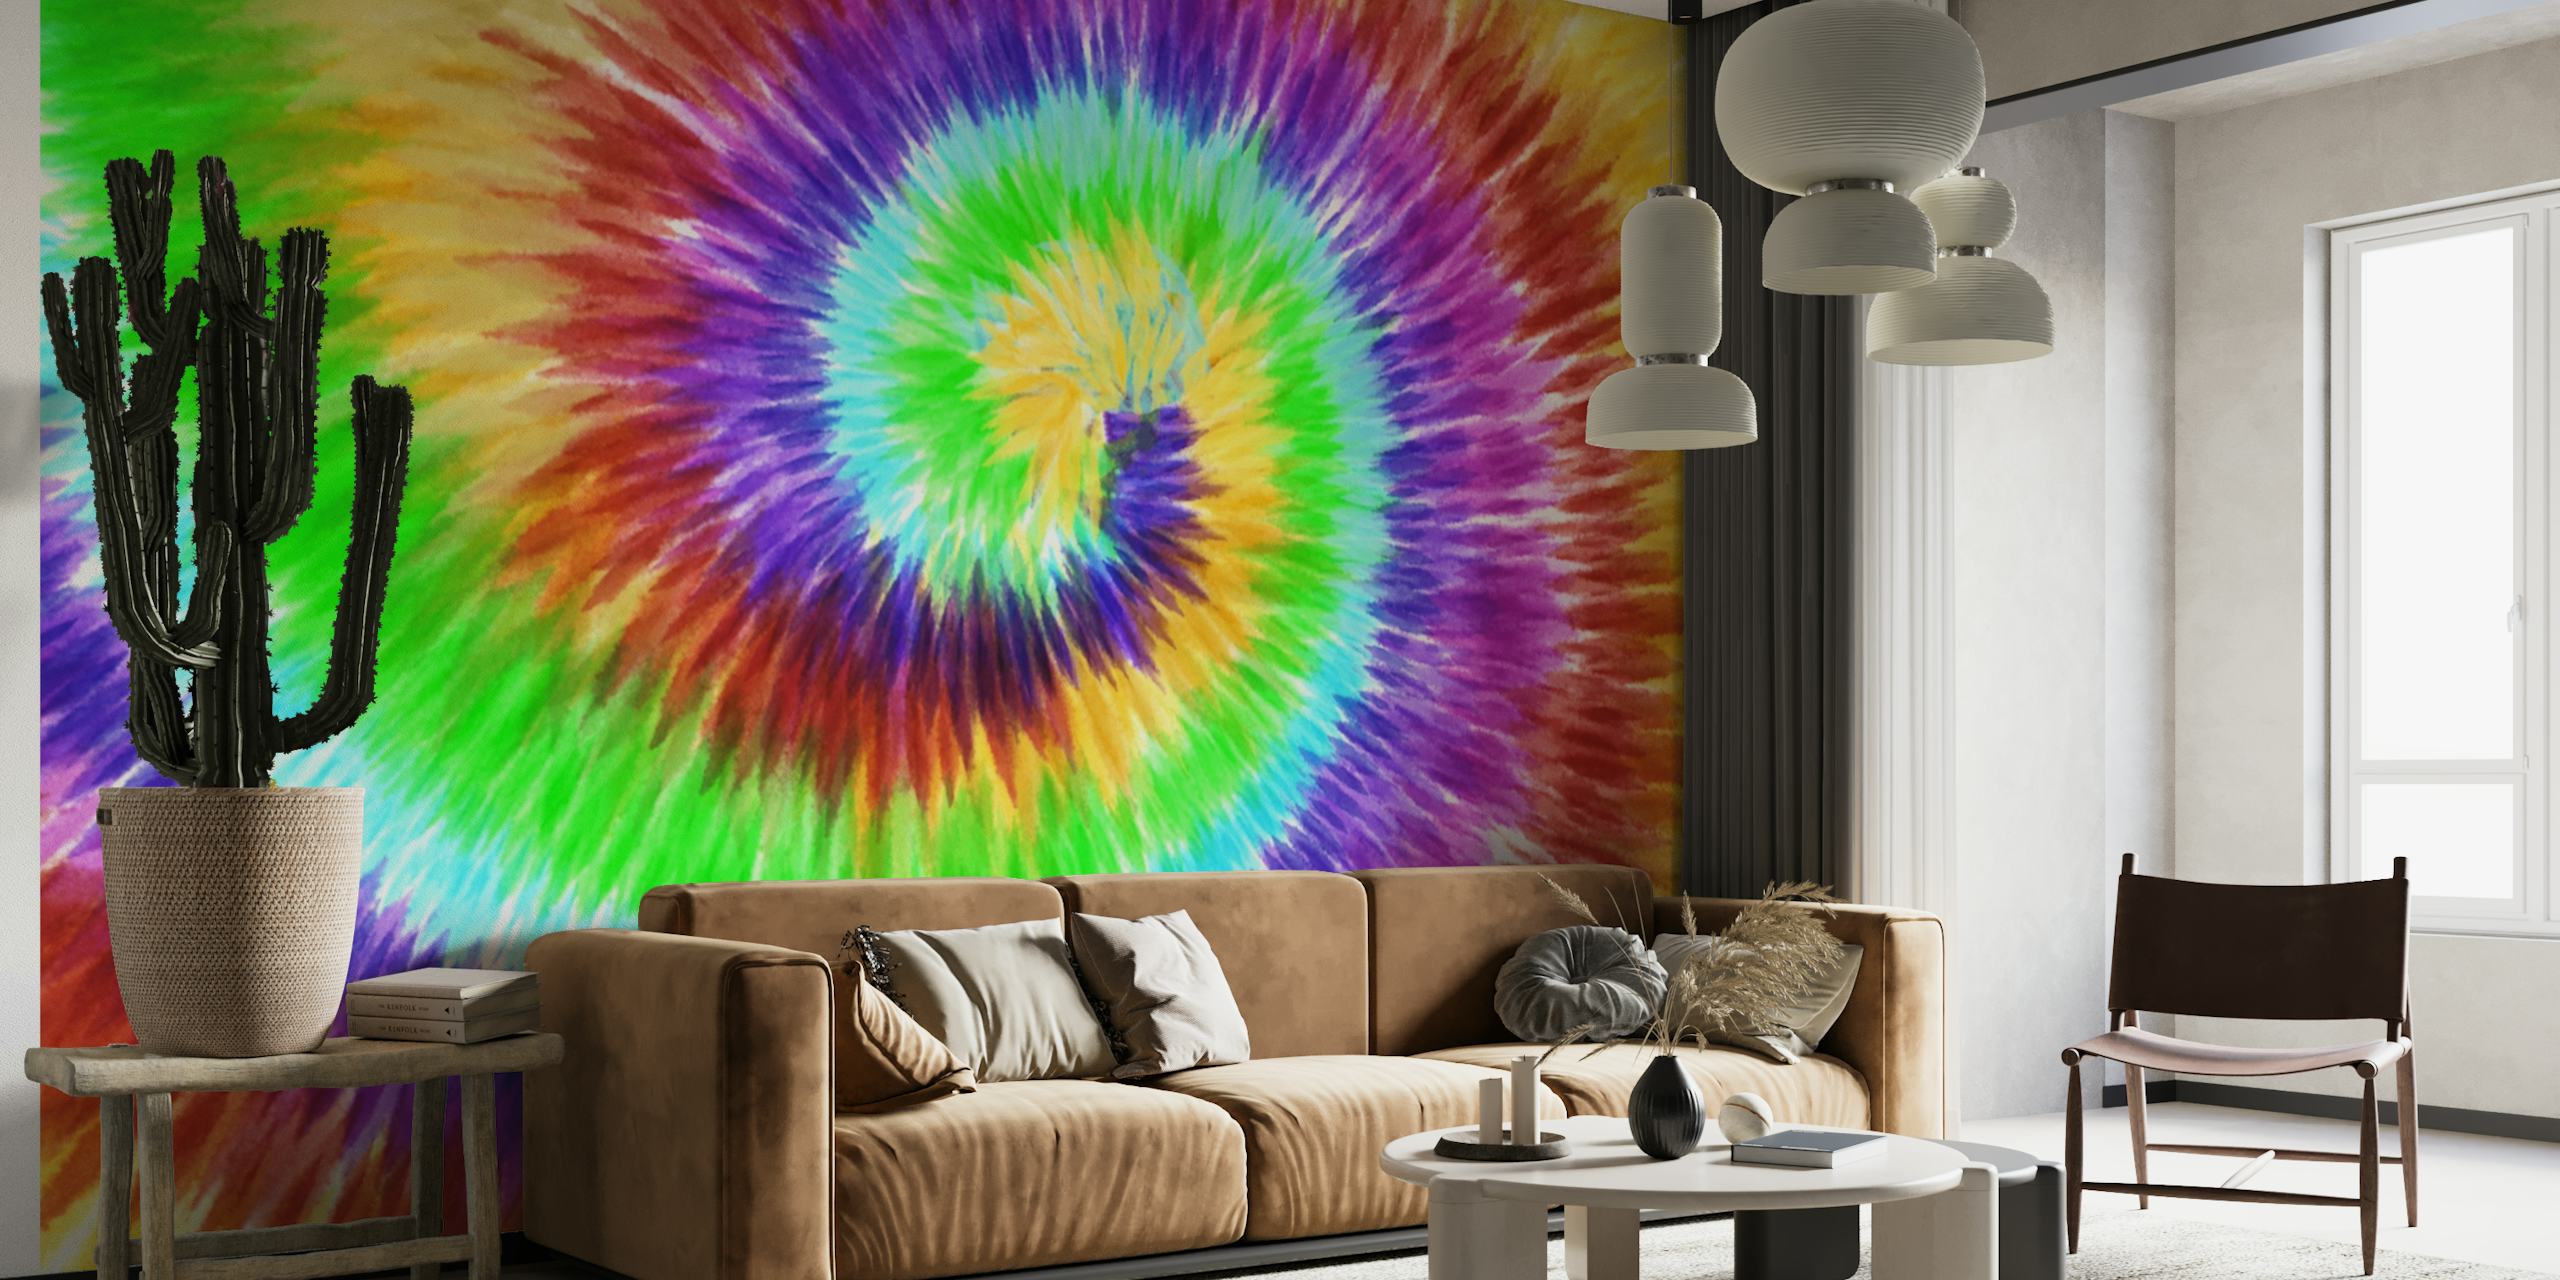 Papier peint mural en spirale tie-dye coloré pour une décoration de pièce vibrante